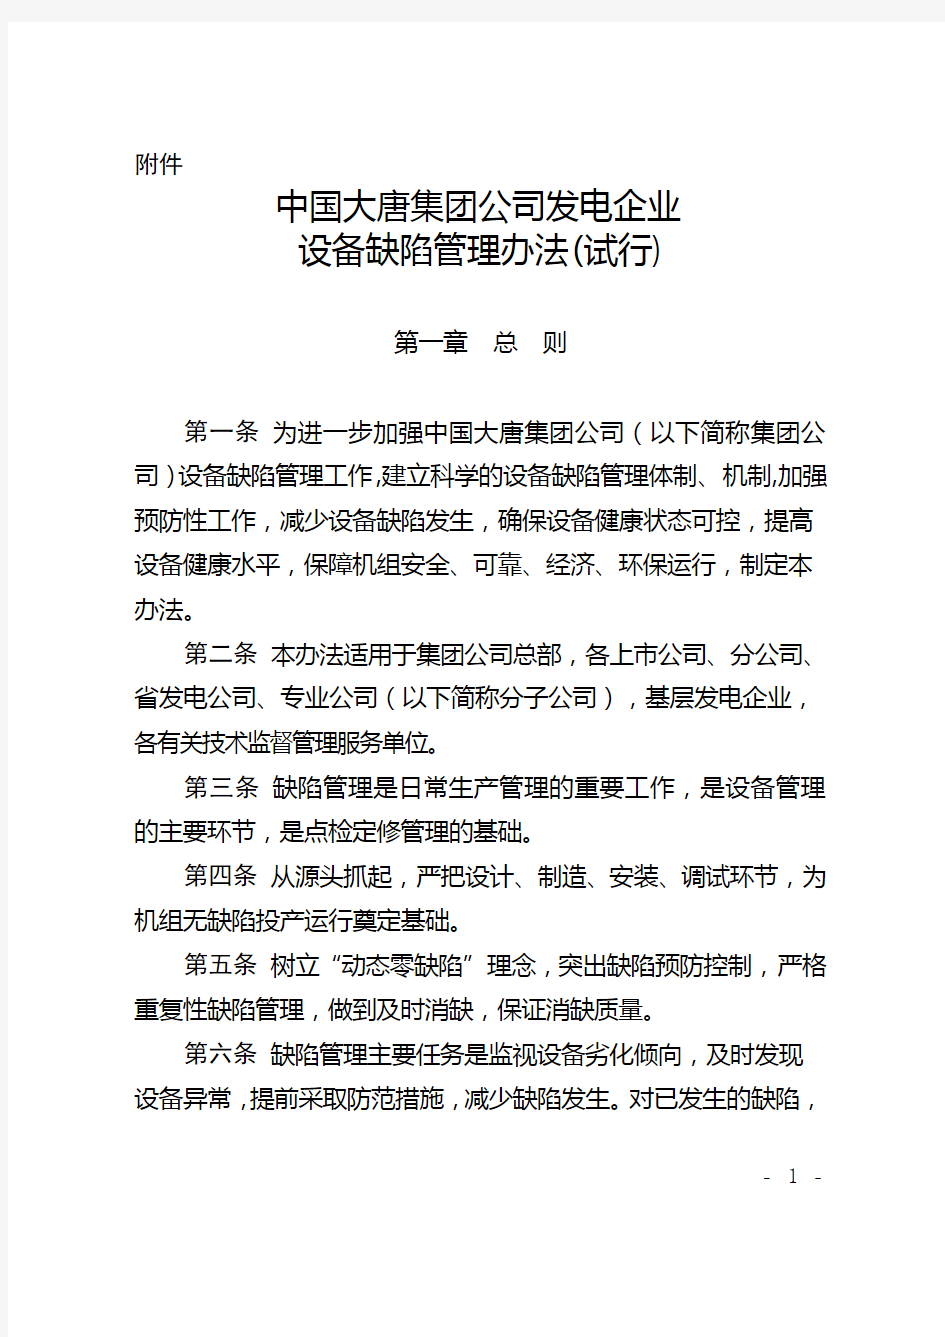 中国大唐集团公司发电企业设备缺陷管理办法(试行)